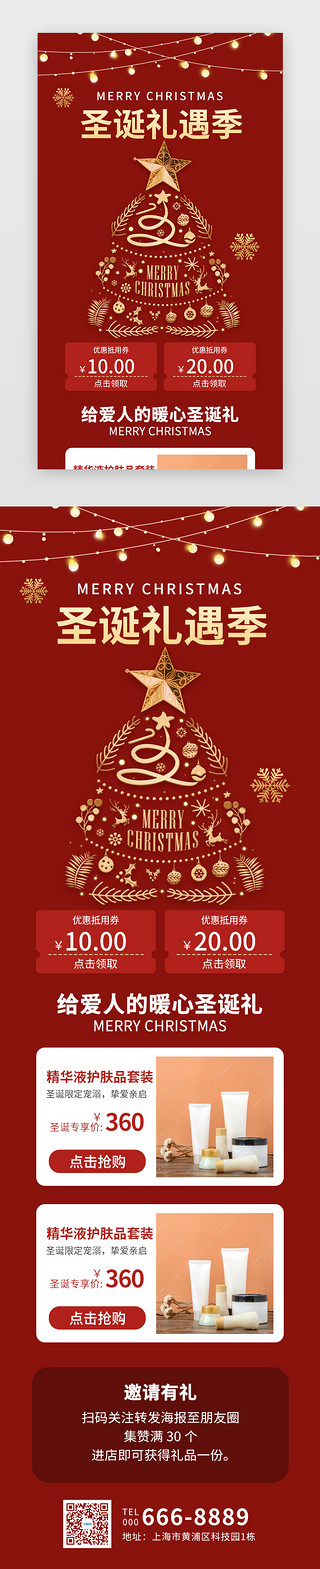 礼物圣诞盒子UI设计素材_圣诞礼遇季H5创意红色圣诞树